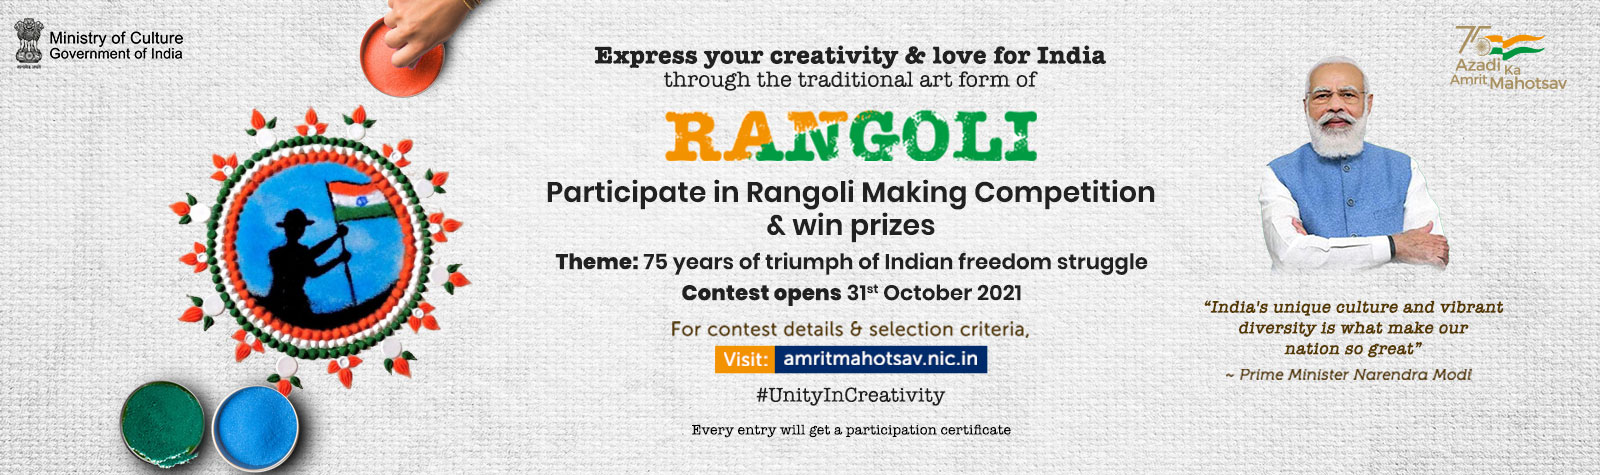 'Rangoli Making' Competition